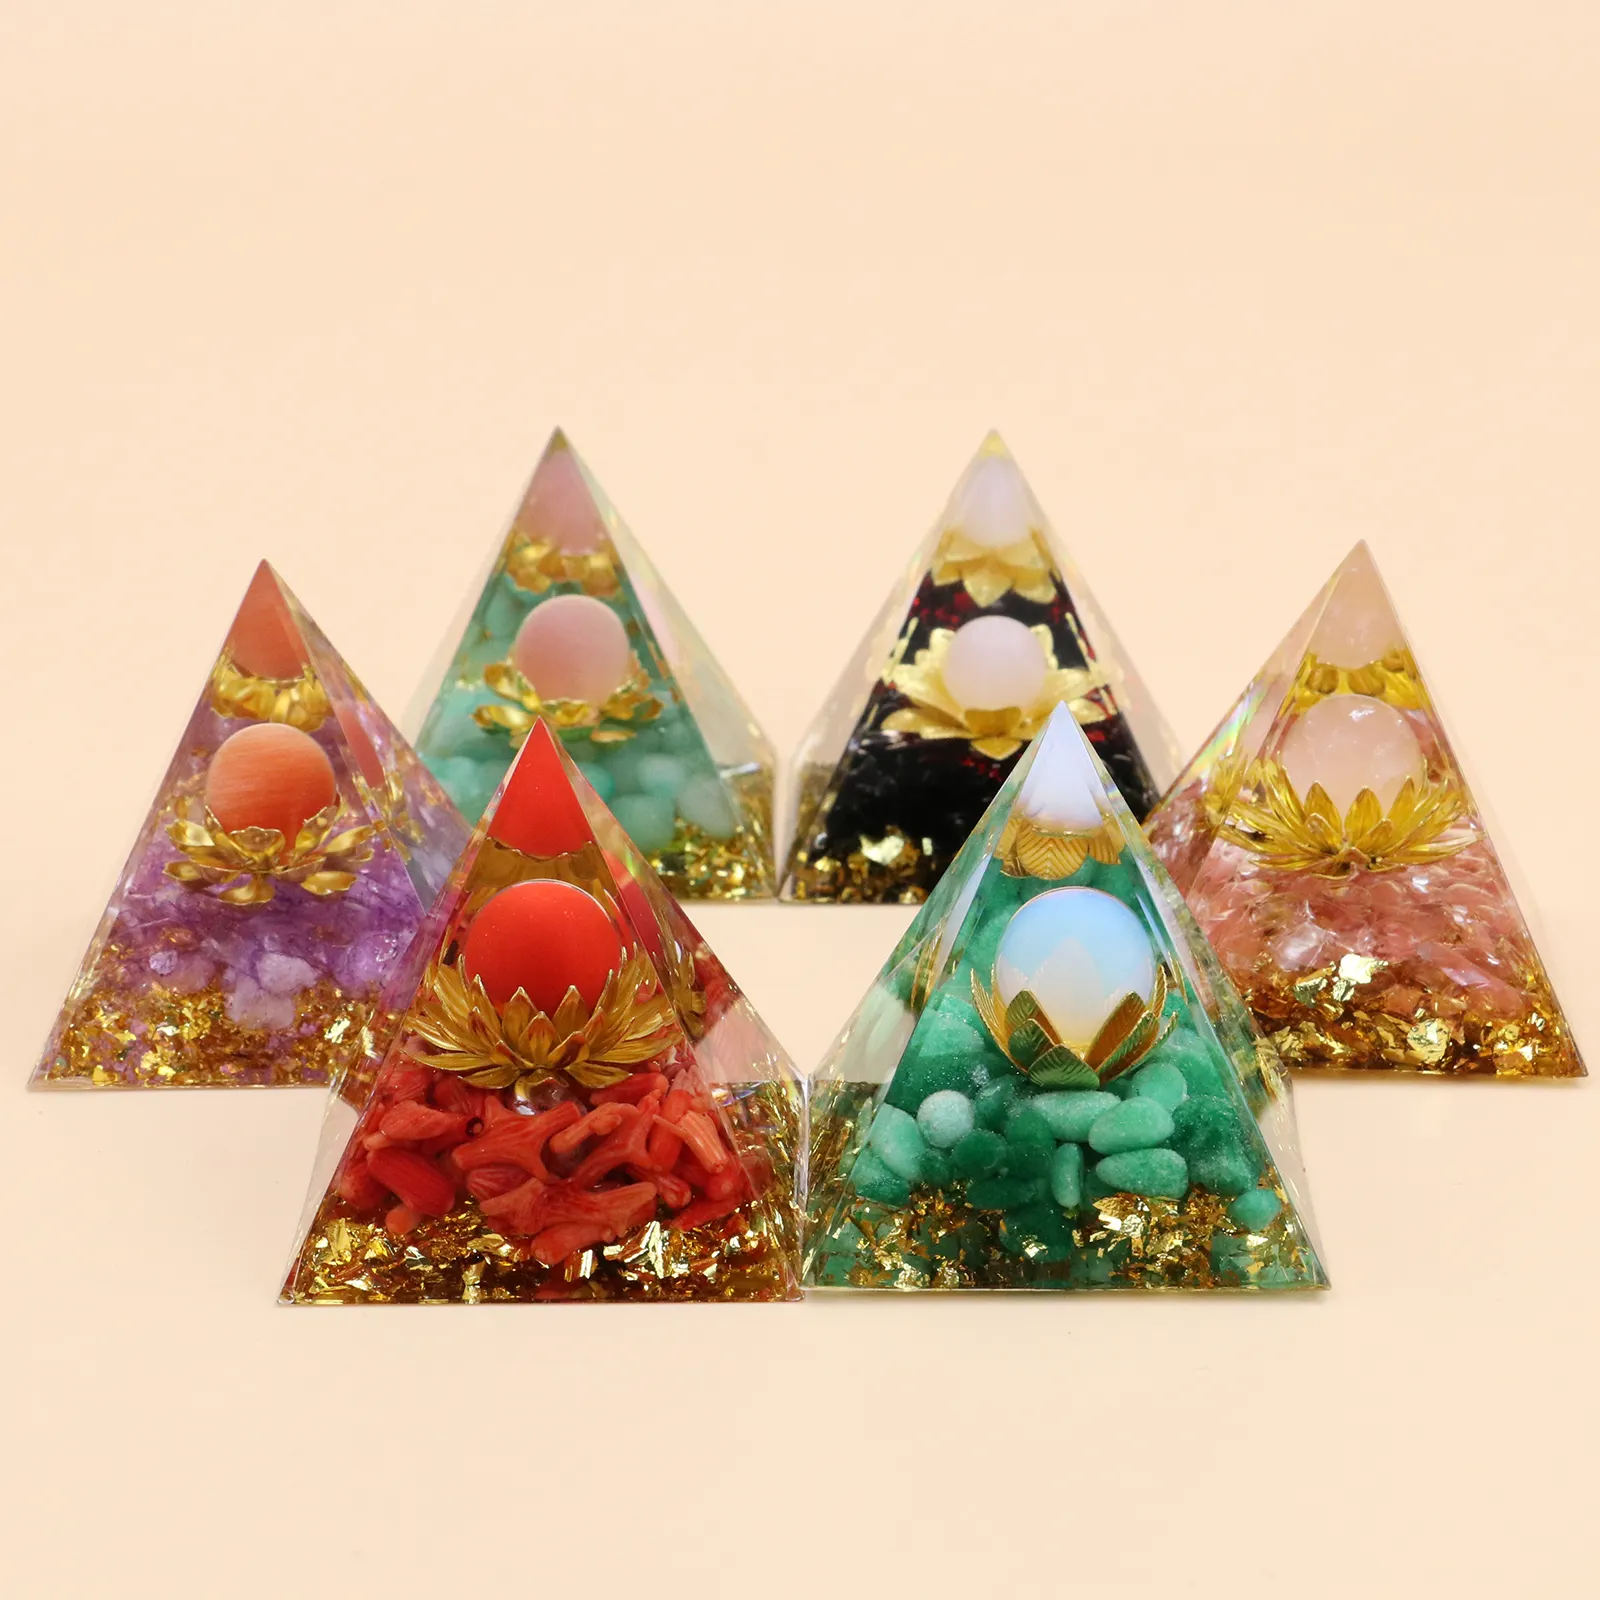 Atacado hot sale Crystal Pyramid alta qualidade A Pirâmide do Lótus de Cristal cura para decoração